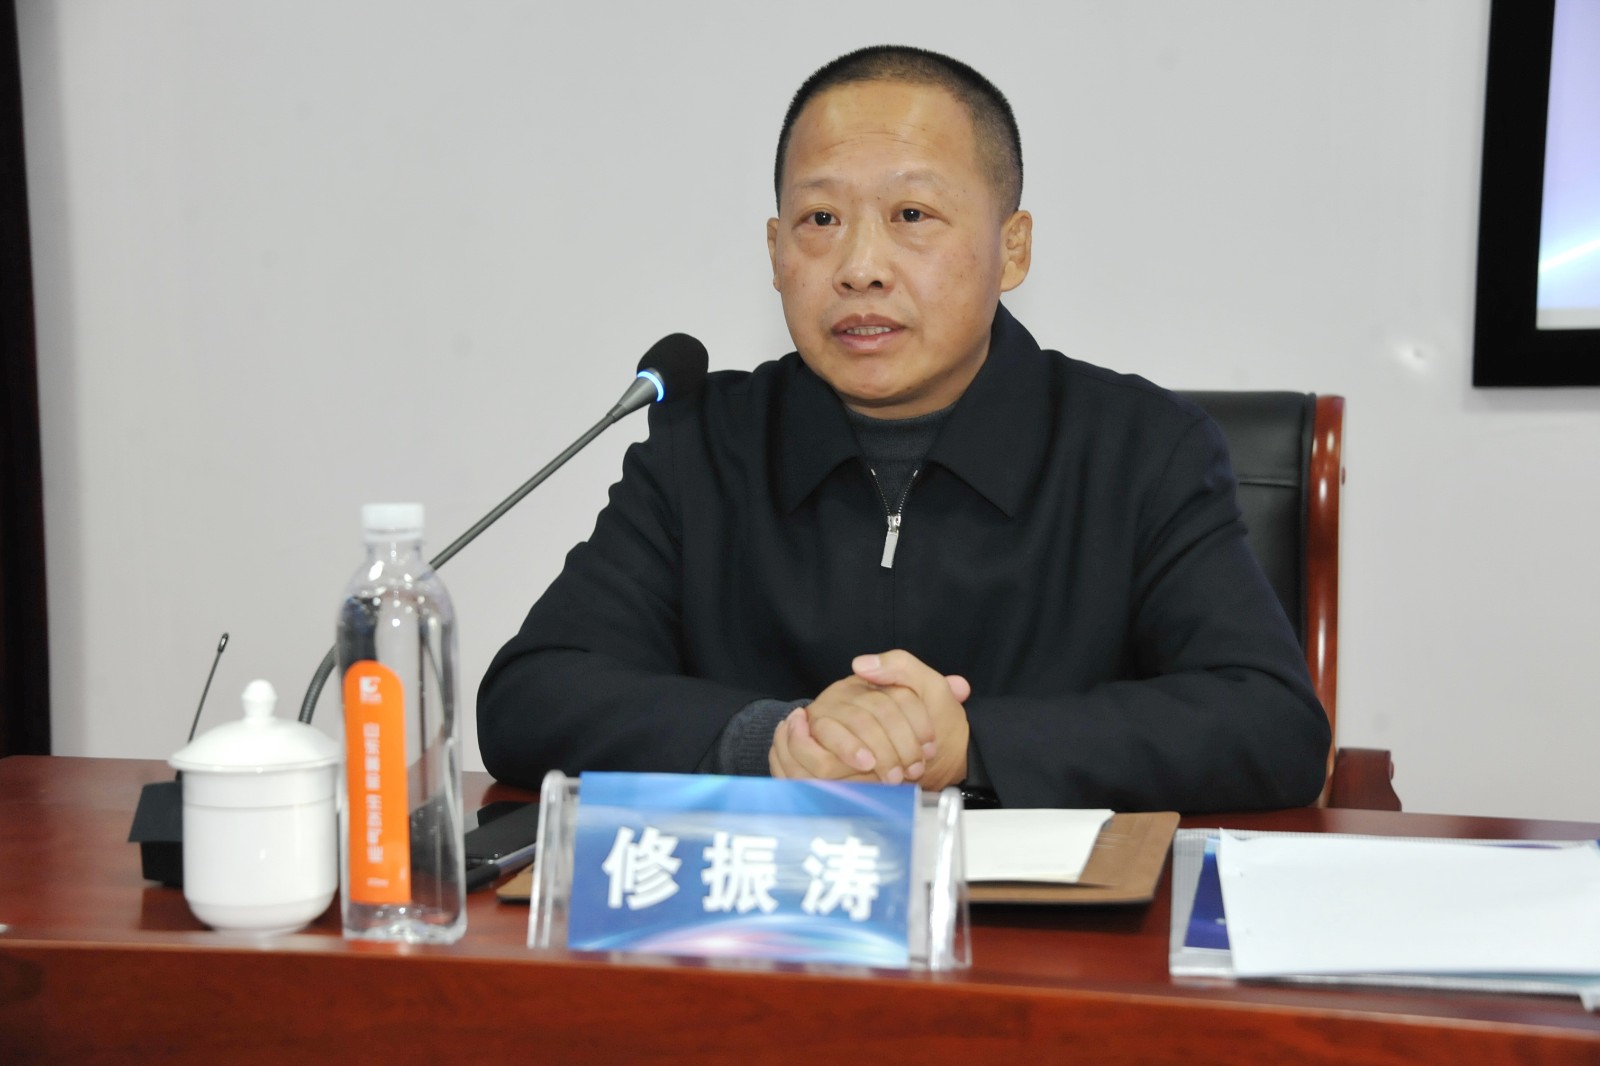 山东省小球运动联合会总结大会在济召开 新一年力争取得新突破